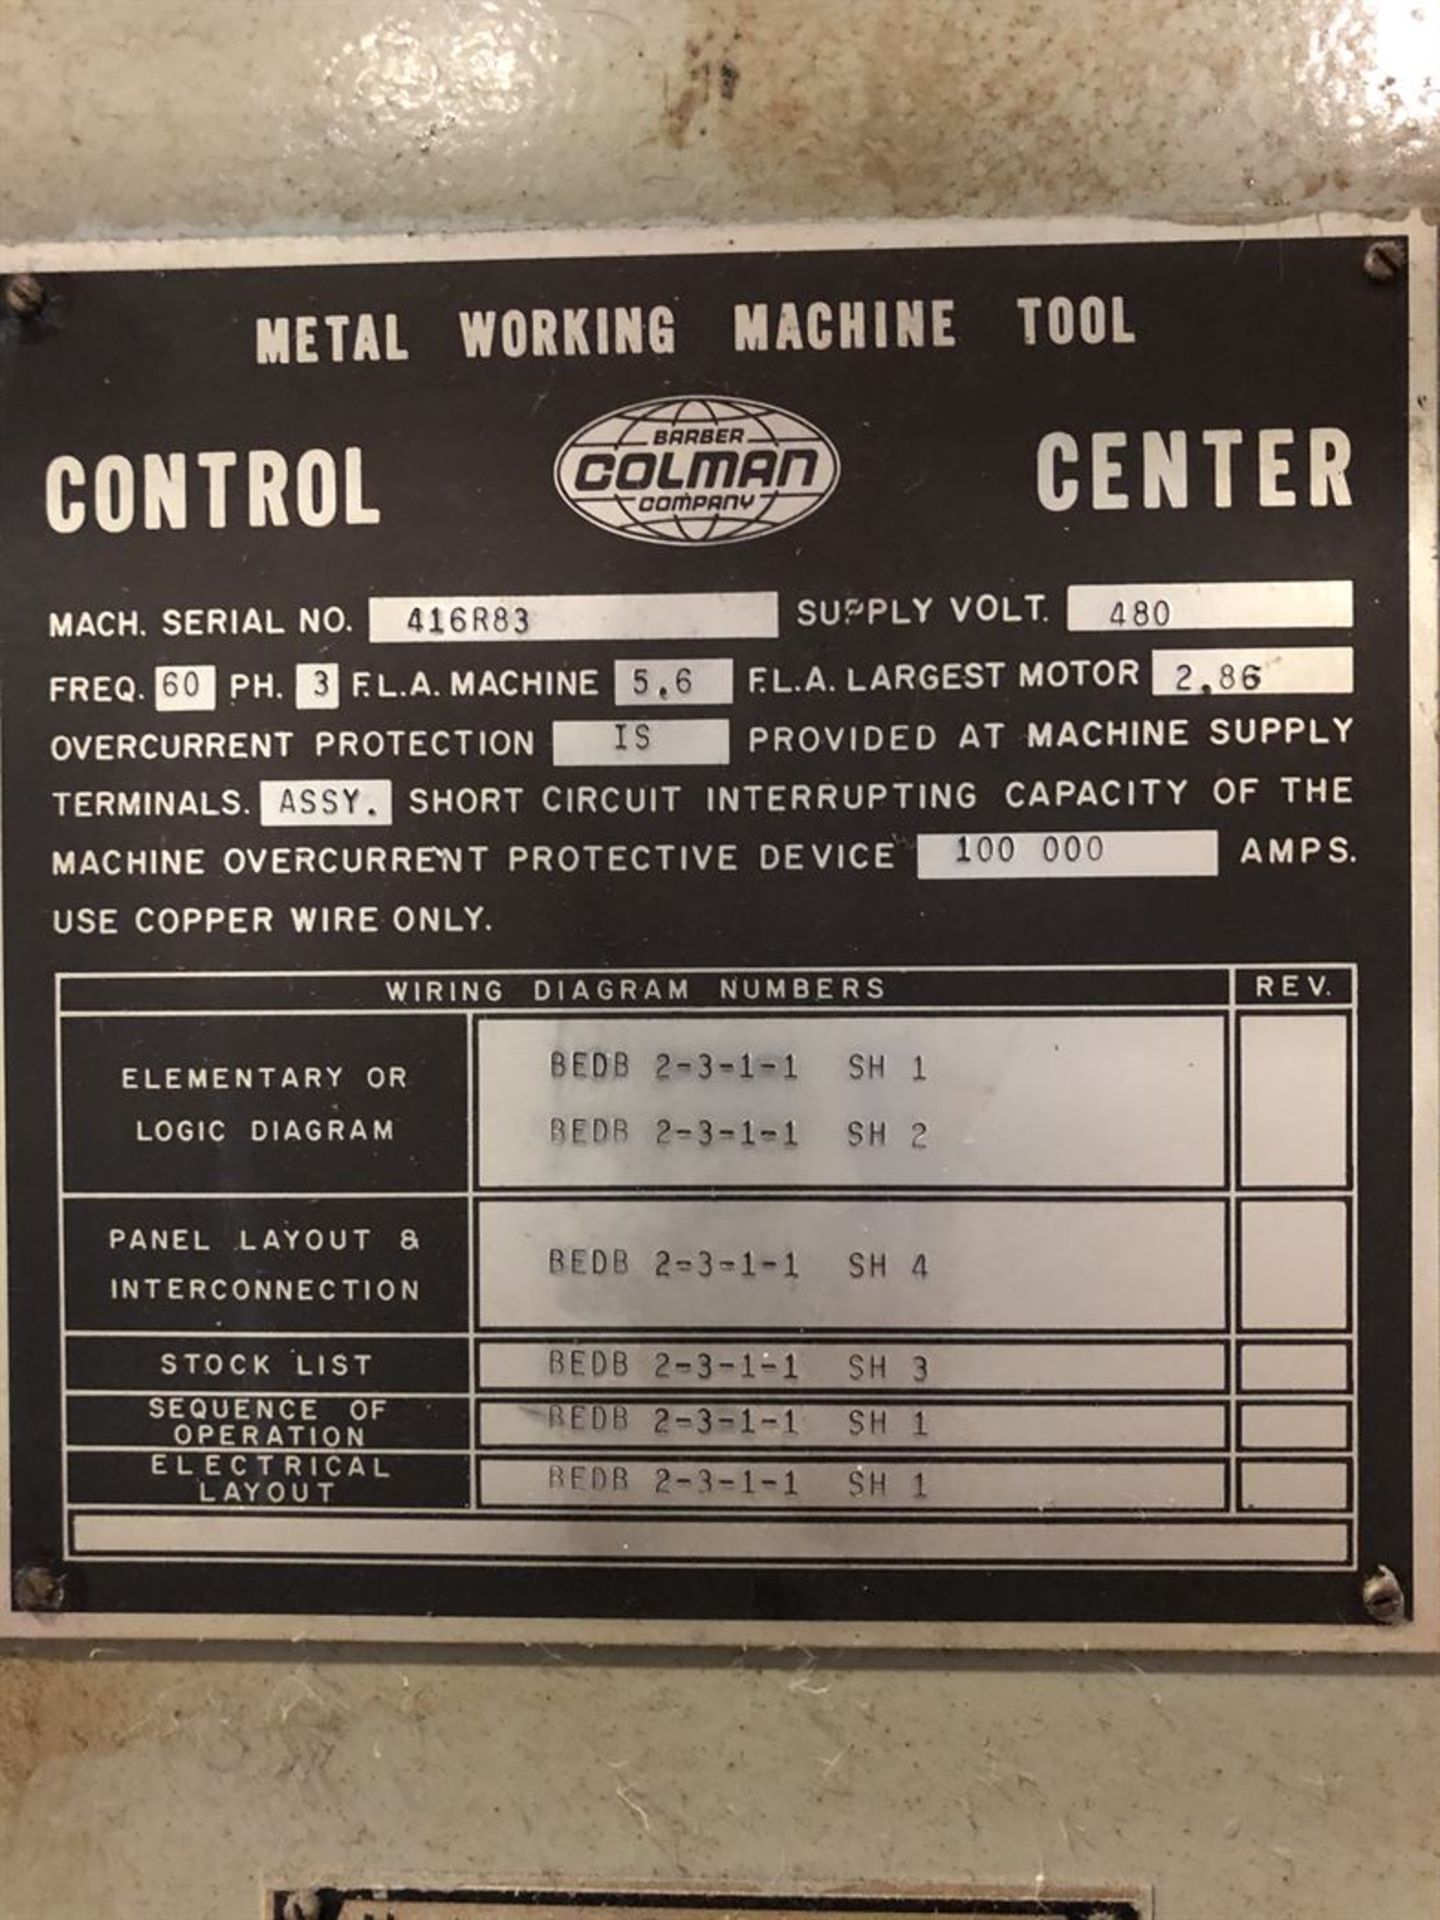 BARBER COLMAN Metal Working Machine Tool Grinder, s/n 416R83, 3 Phase, (29C) - Image 6 of 6